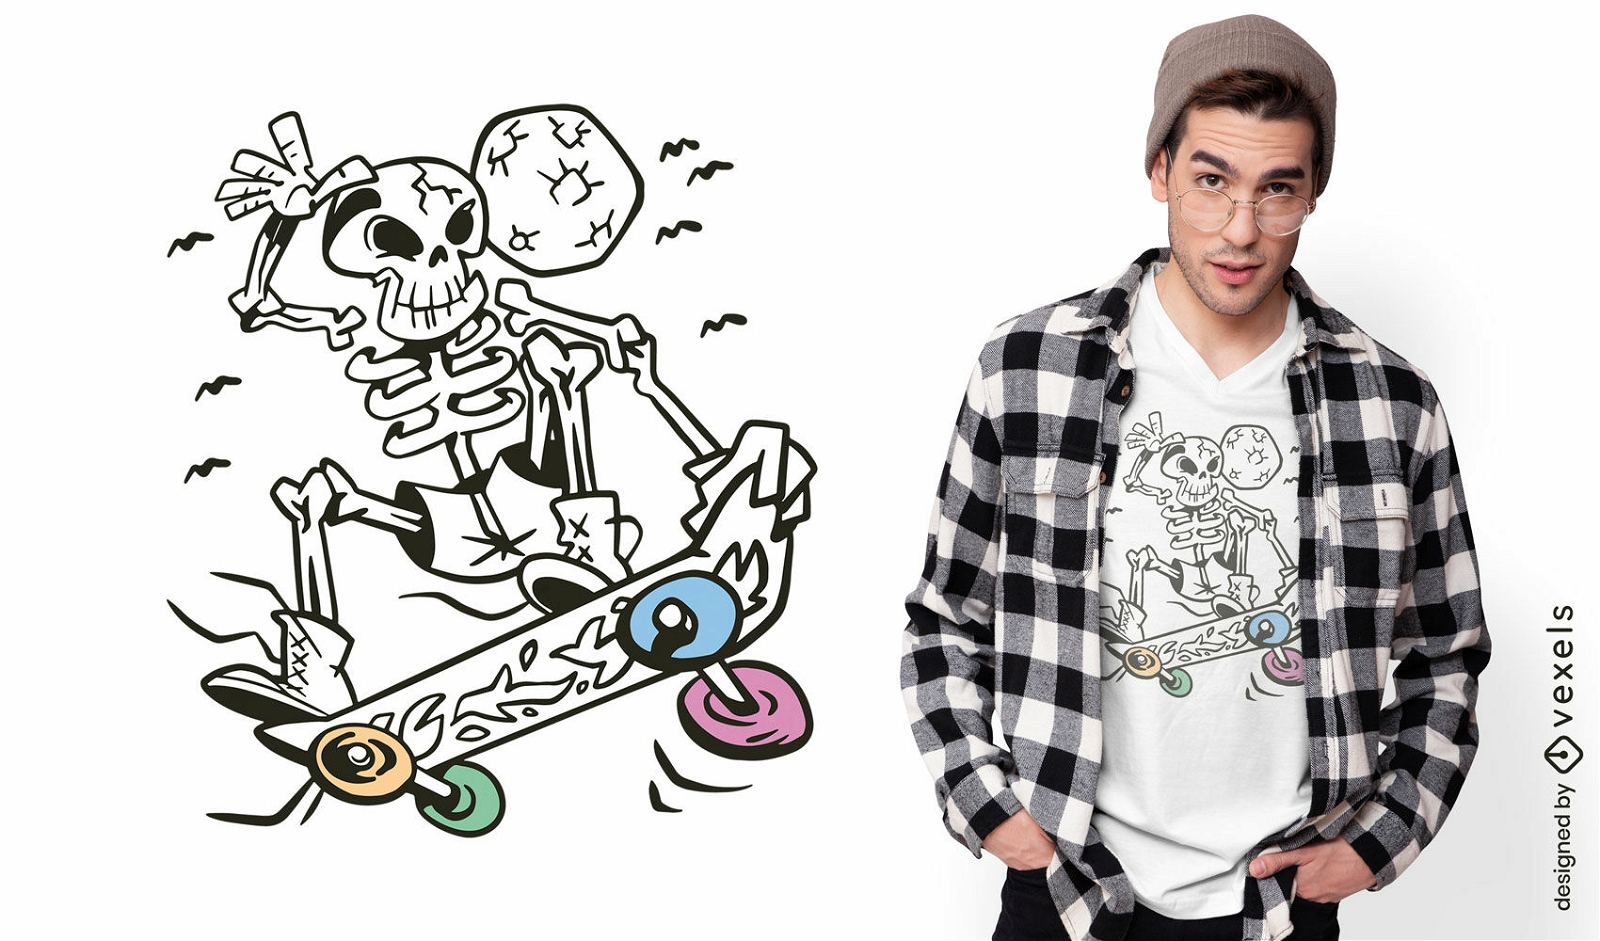 Dise?o de camiseta de skate esqueleto.